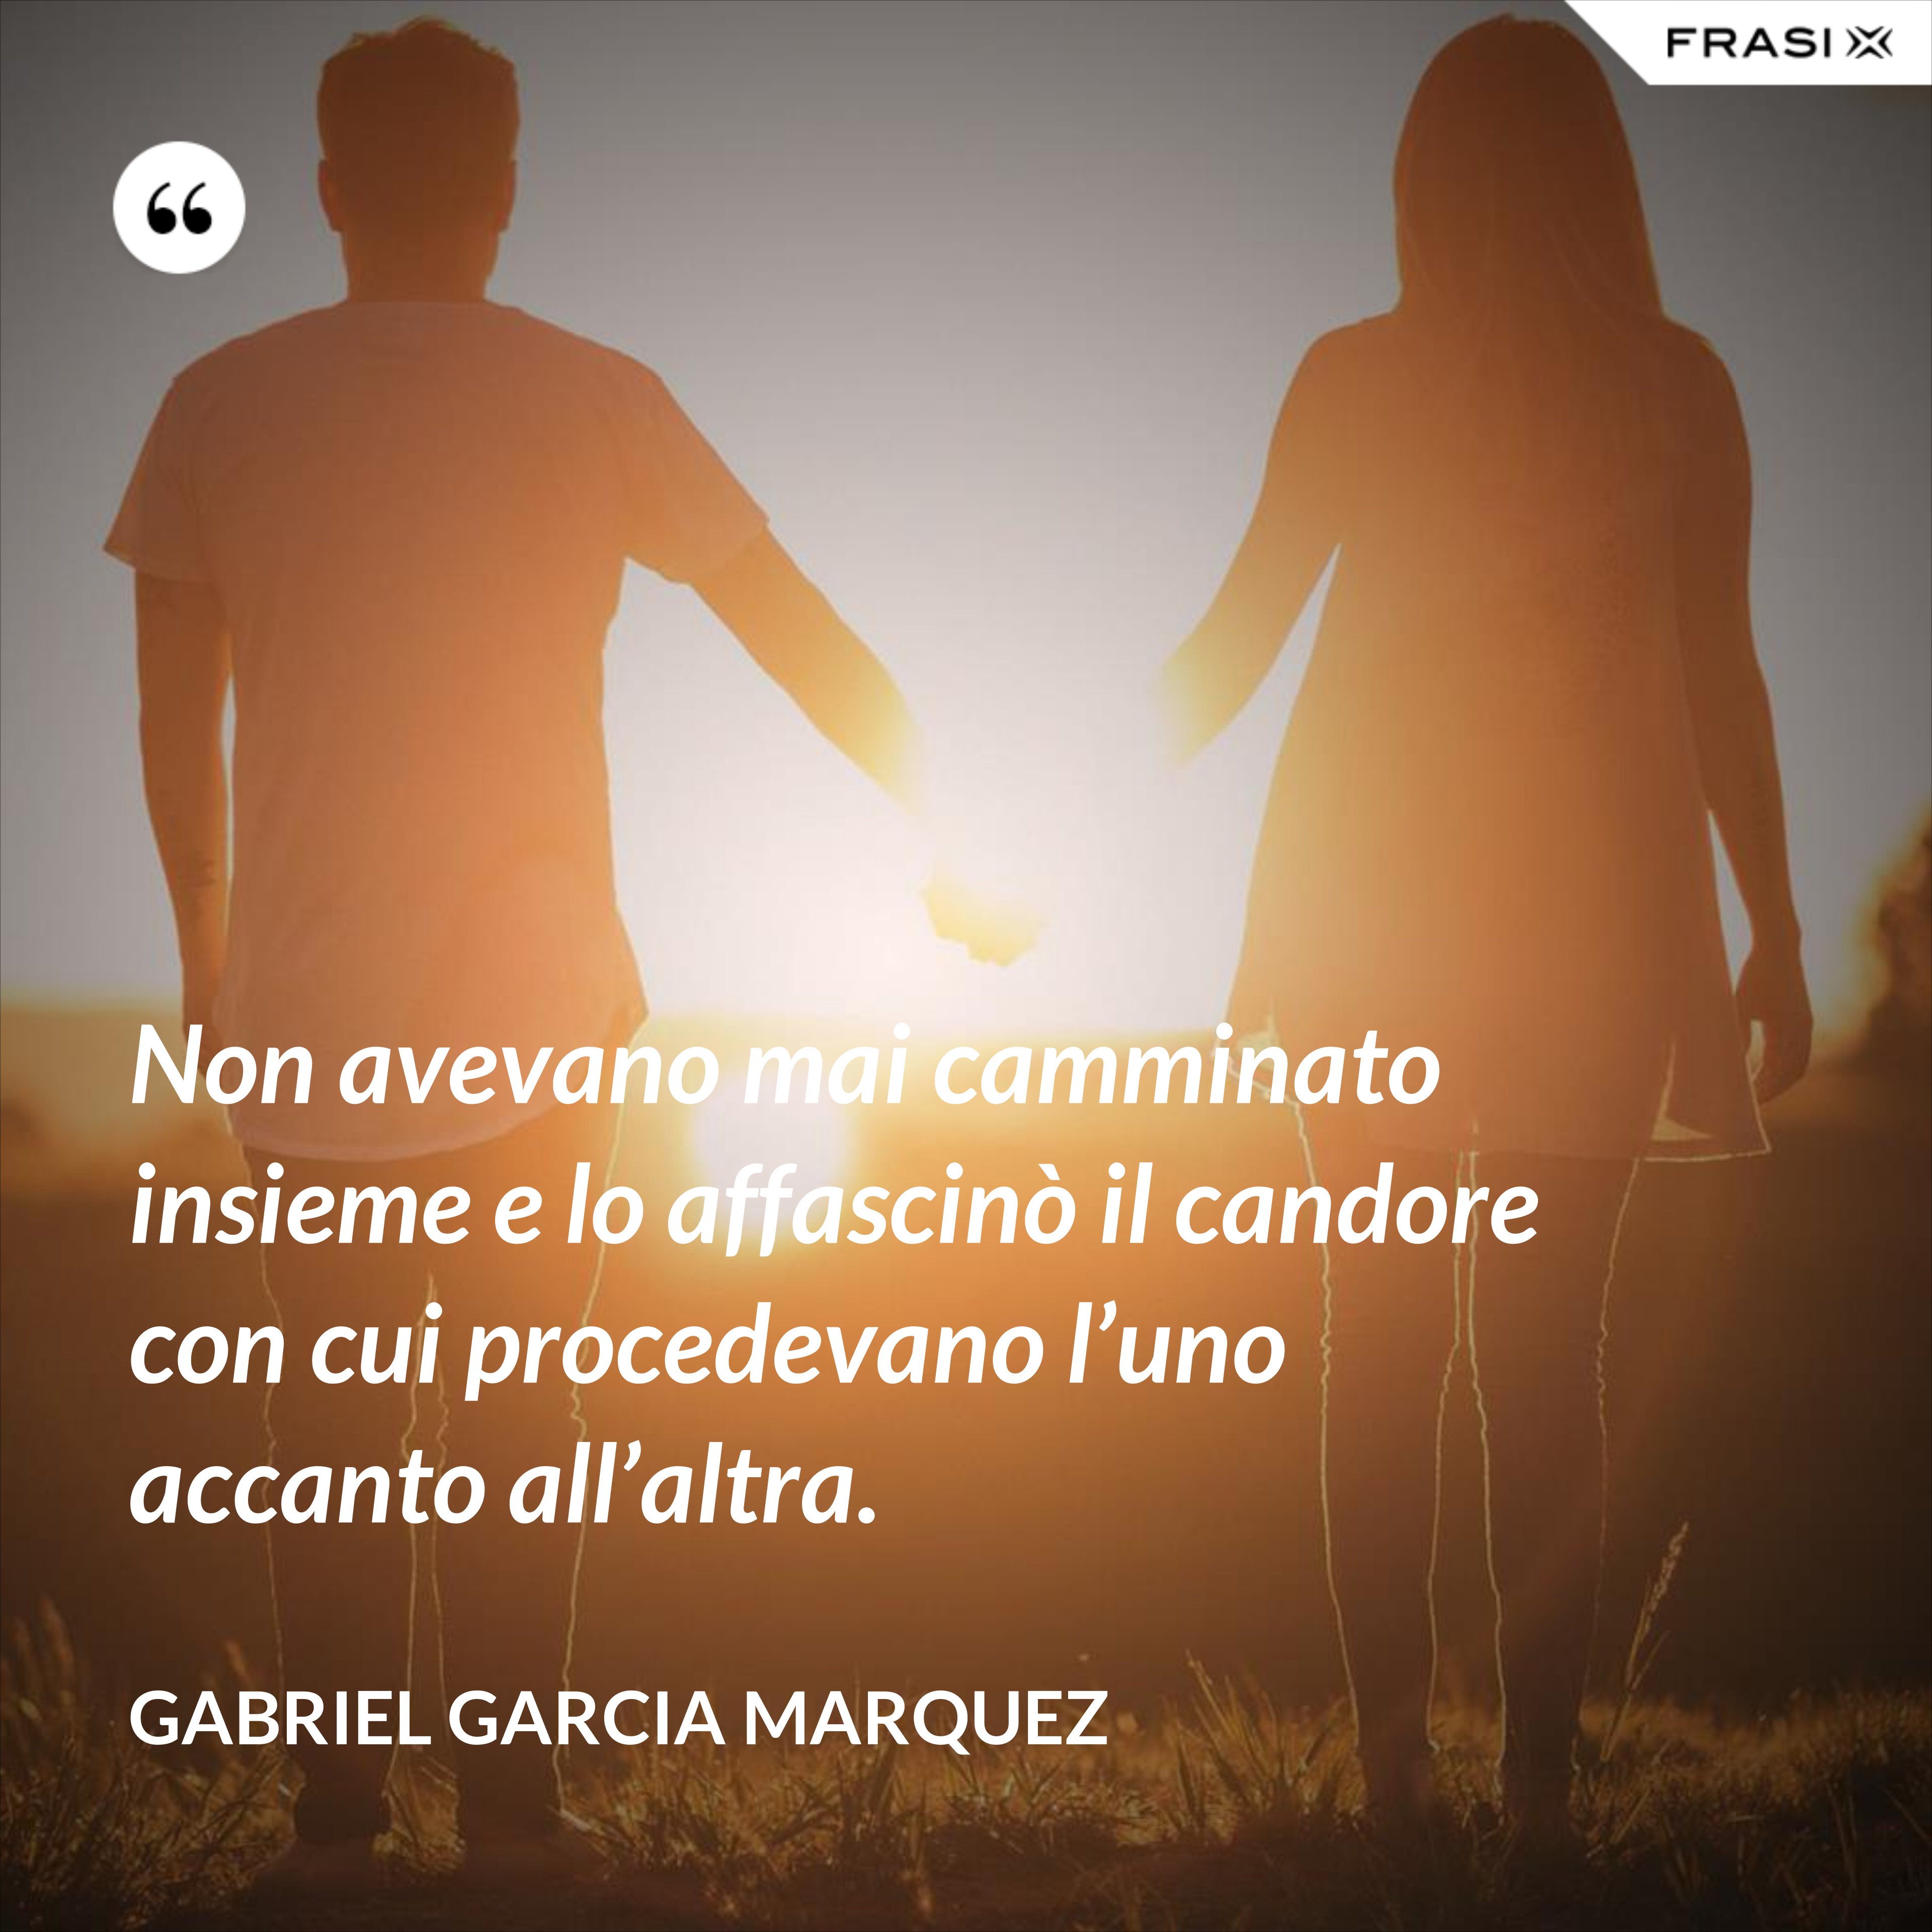 Non avevano mai camminato insieme e lo affascinò il candore con cui procedevano l’uno accanto all’altra. - Gabriel Garcia Marquez